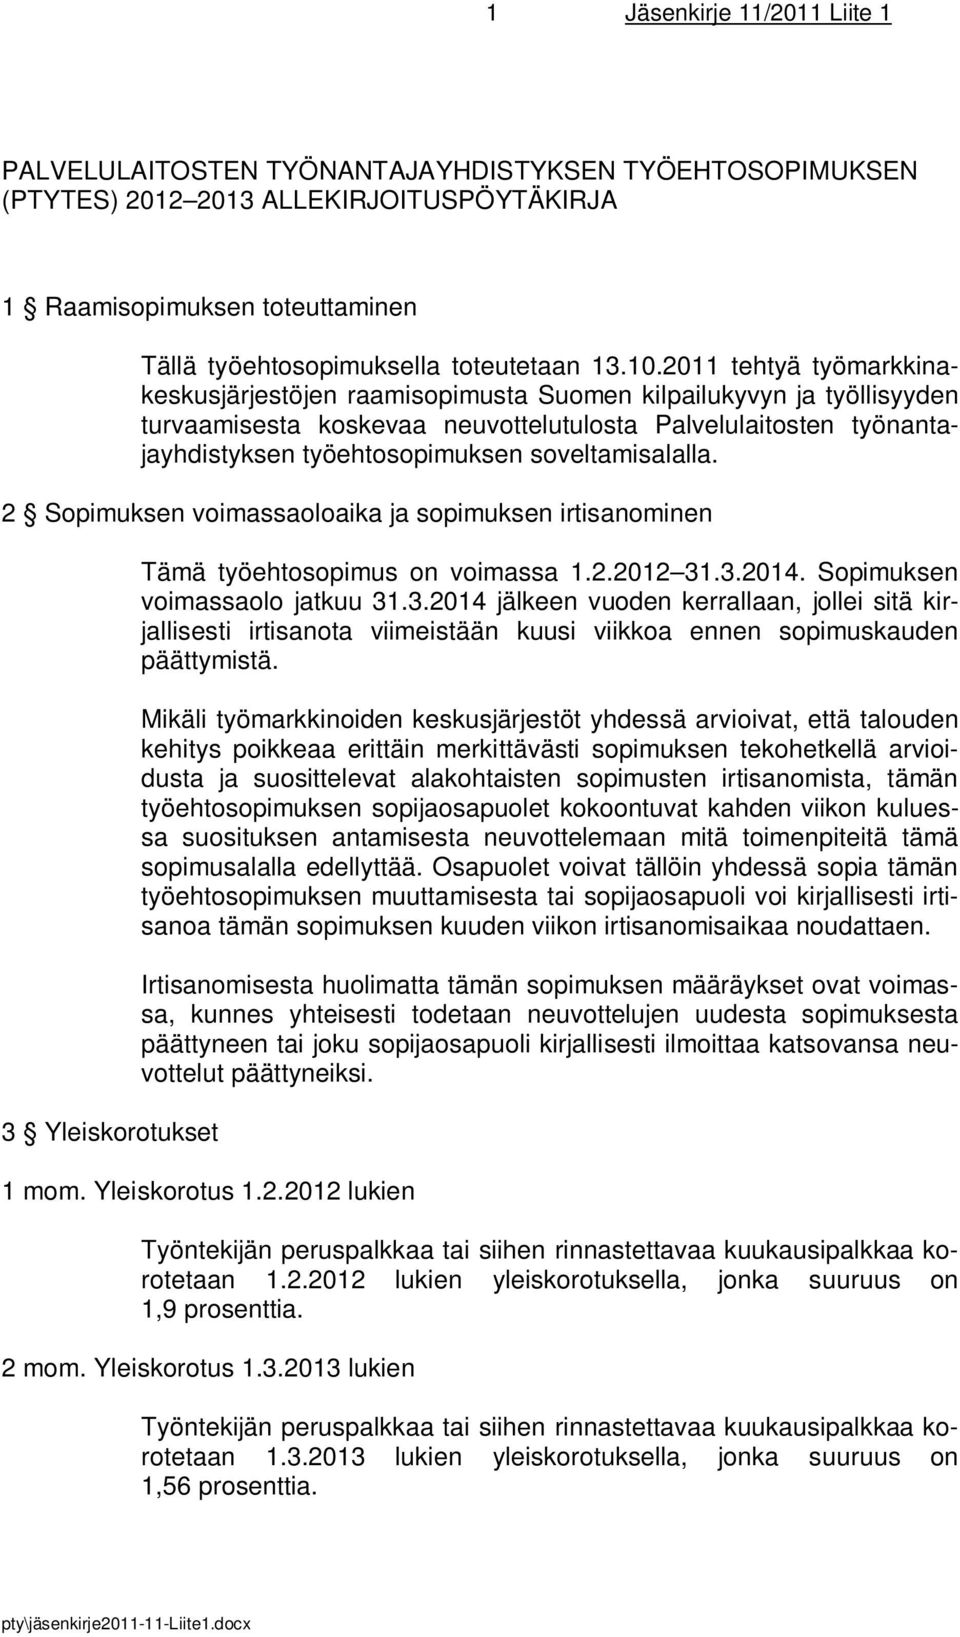 2011 tehtyä työmarkkinakeskusjärjestöjen raamisopimusta Suomen kilpailukyvyn ja työllisyyden turvaamisesta koskevaa neuvottelutulosta Palvelulaitosten työnantajayhdistyksen työehtosopimuksen